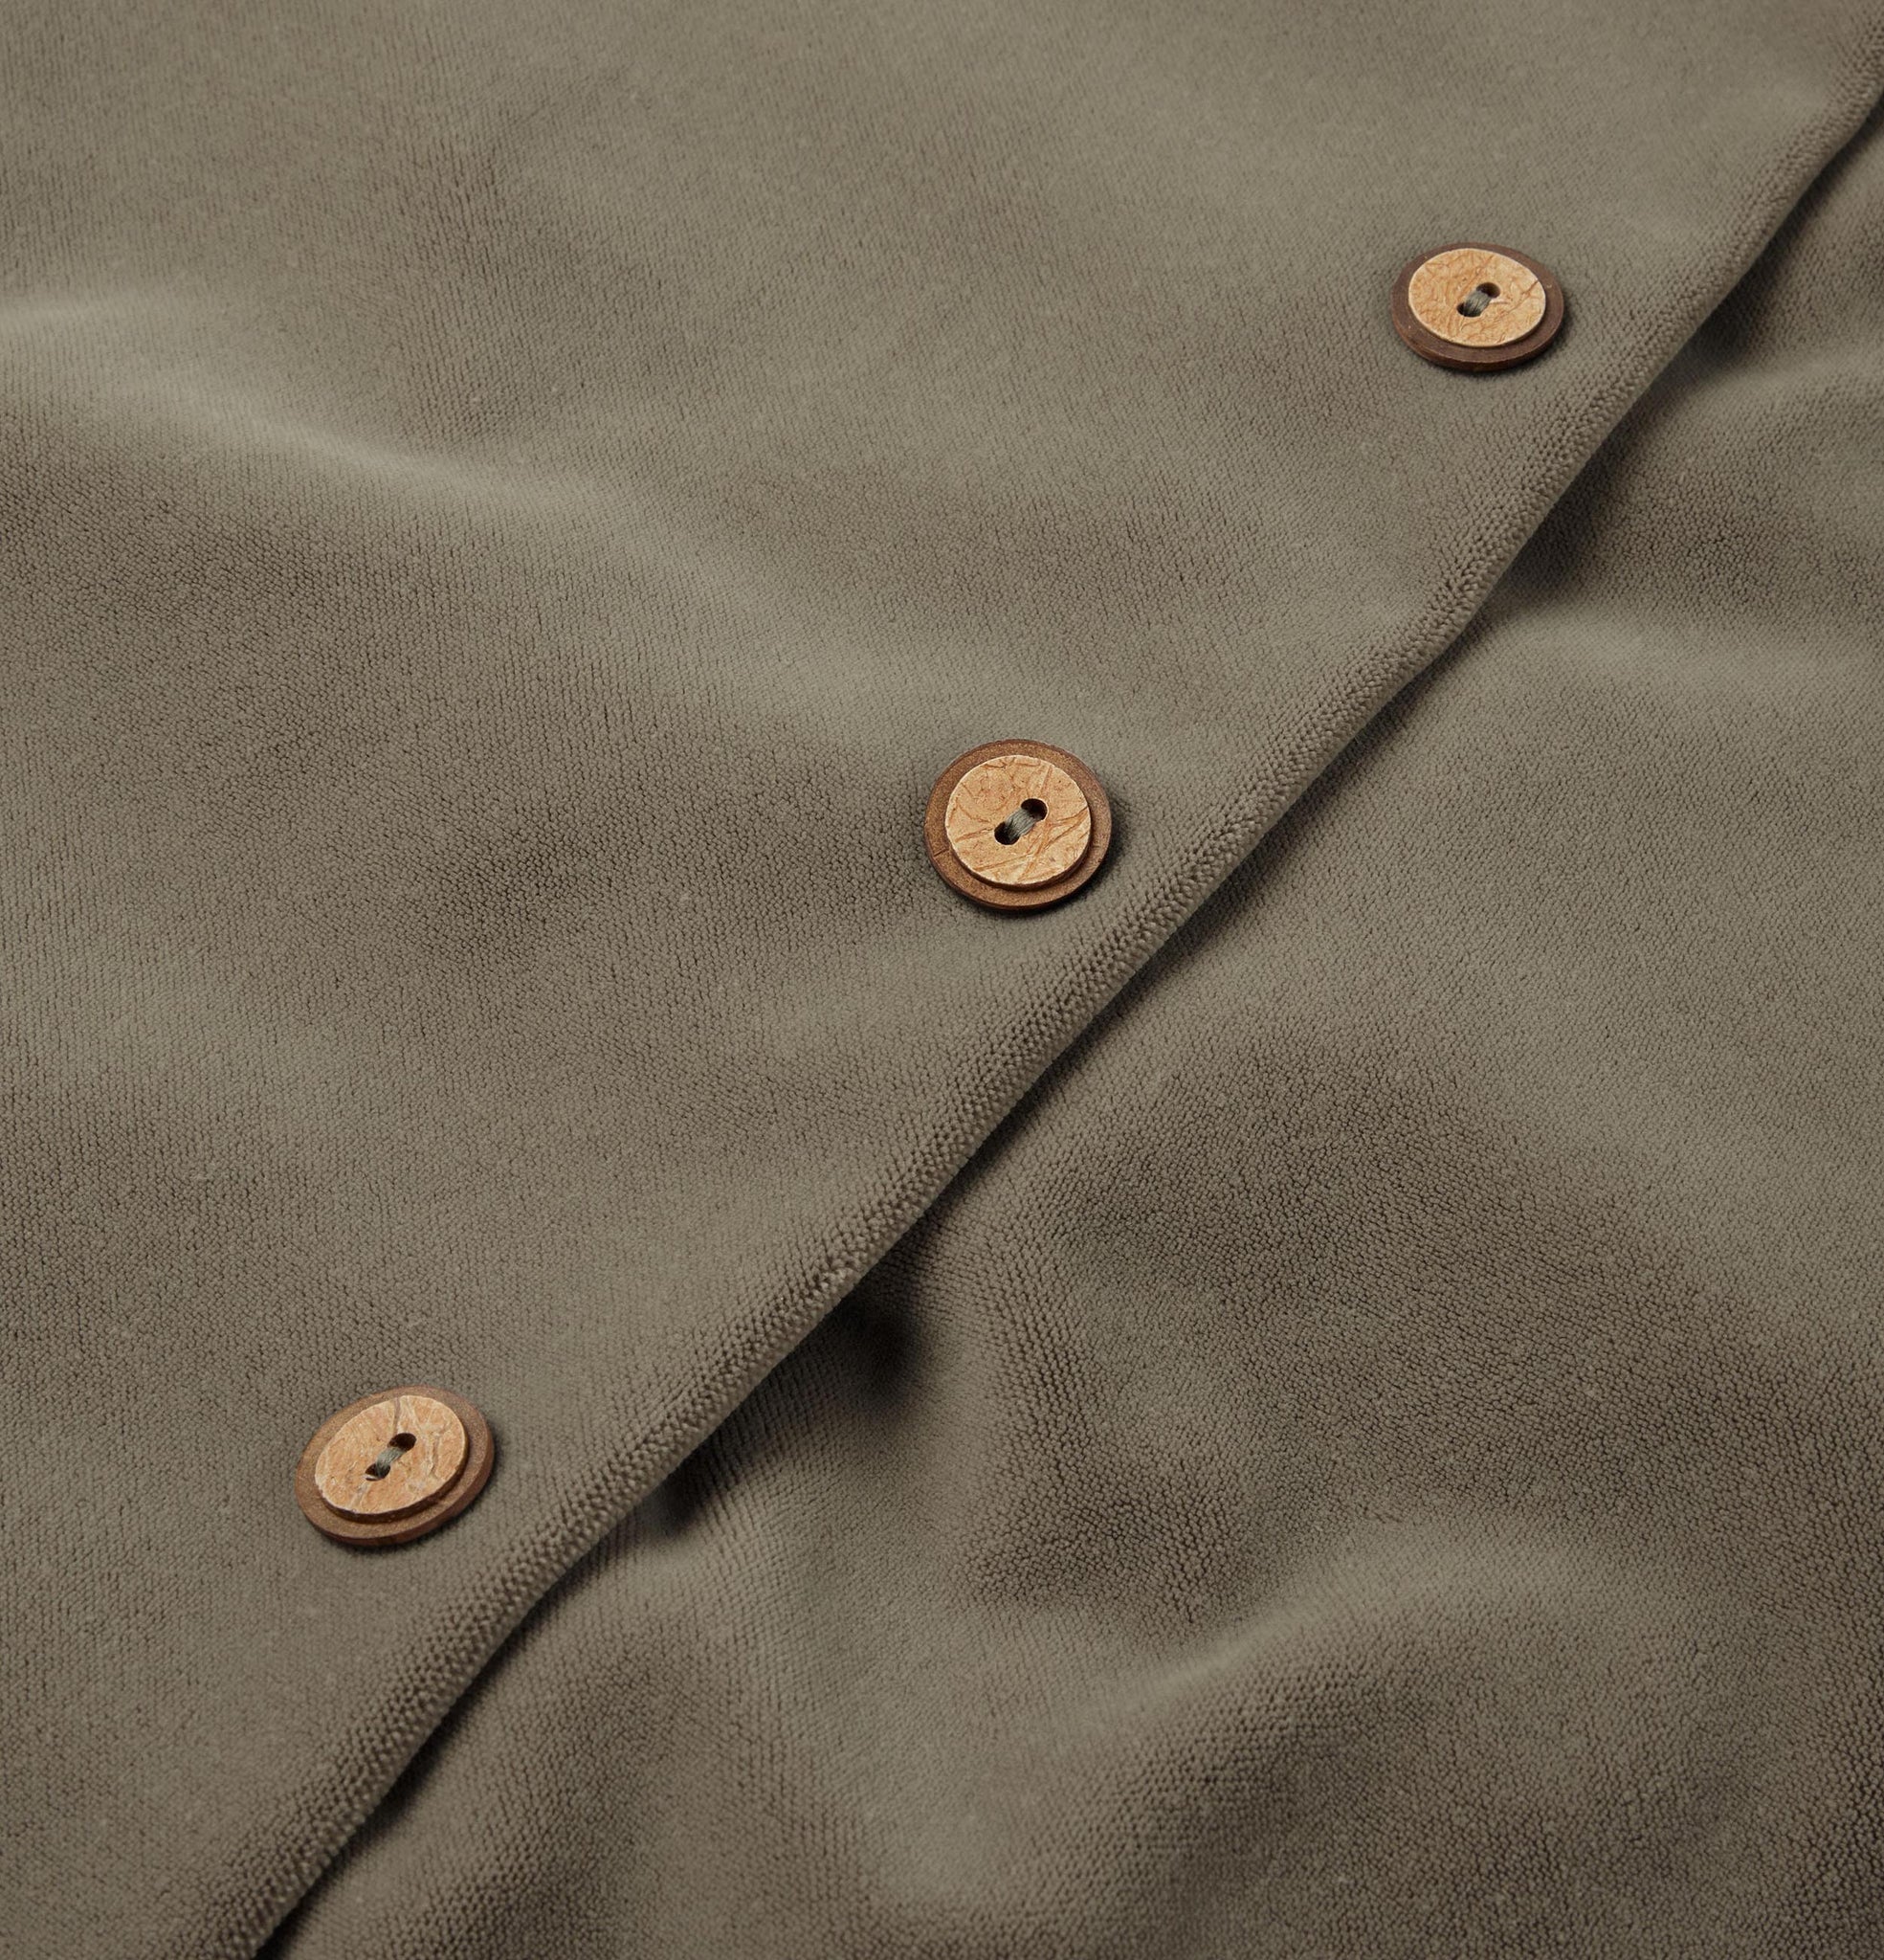 Button detail of dusk grey velvet cushion